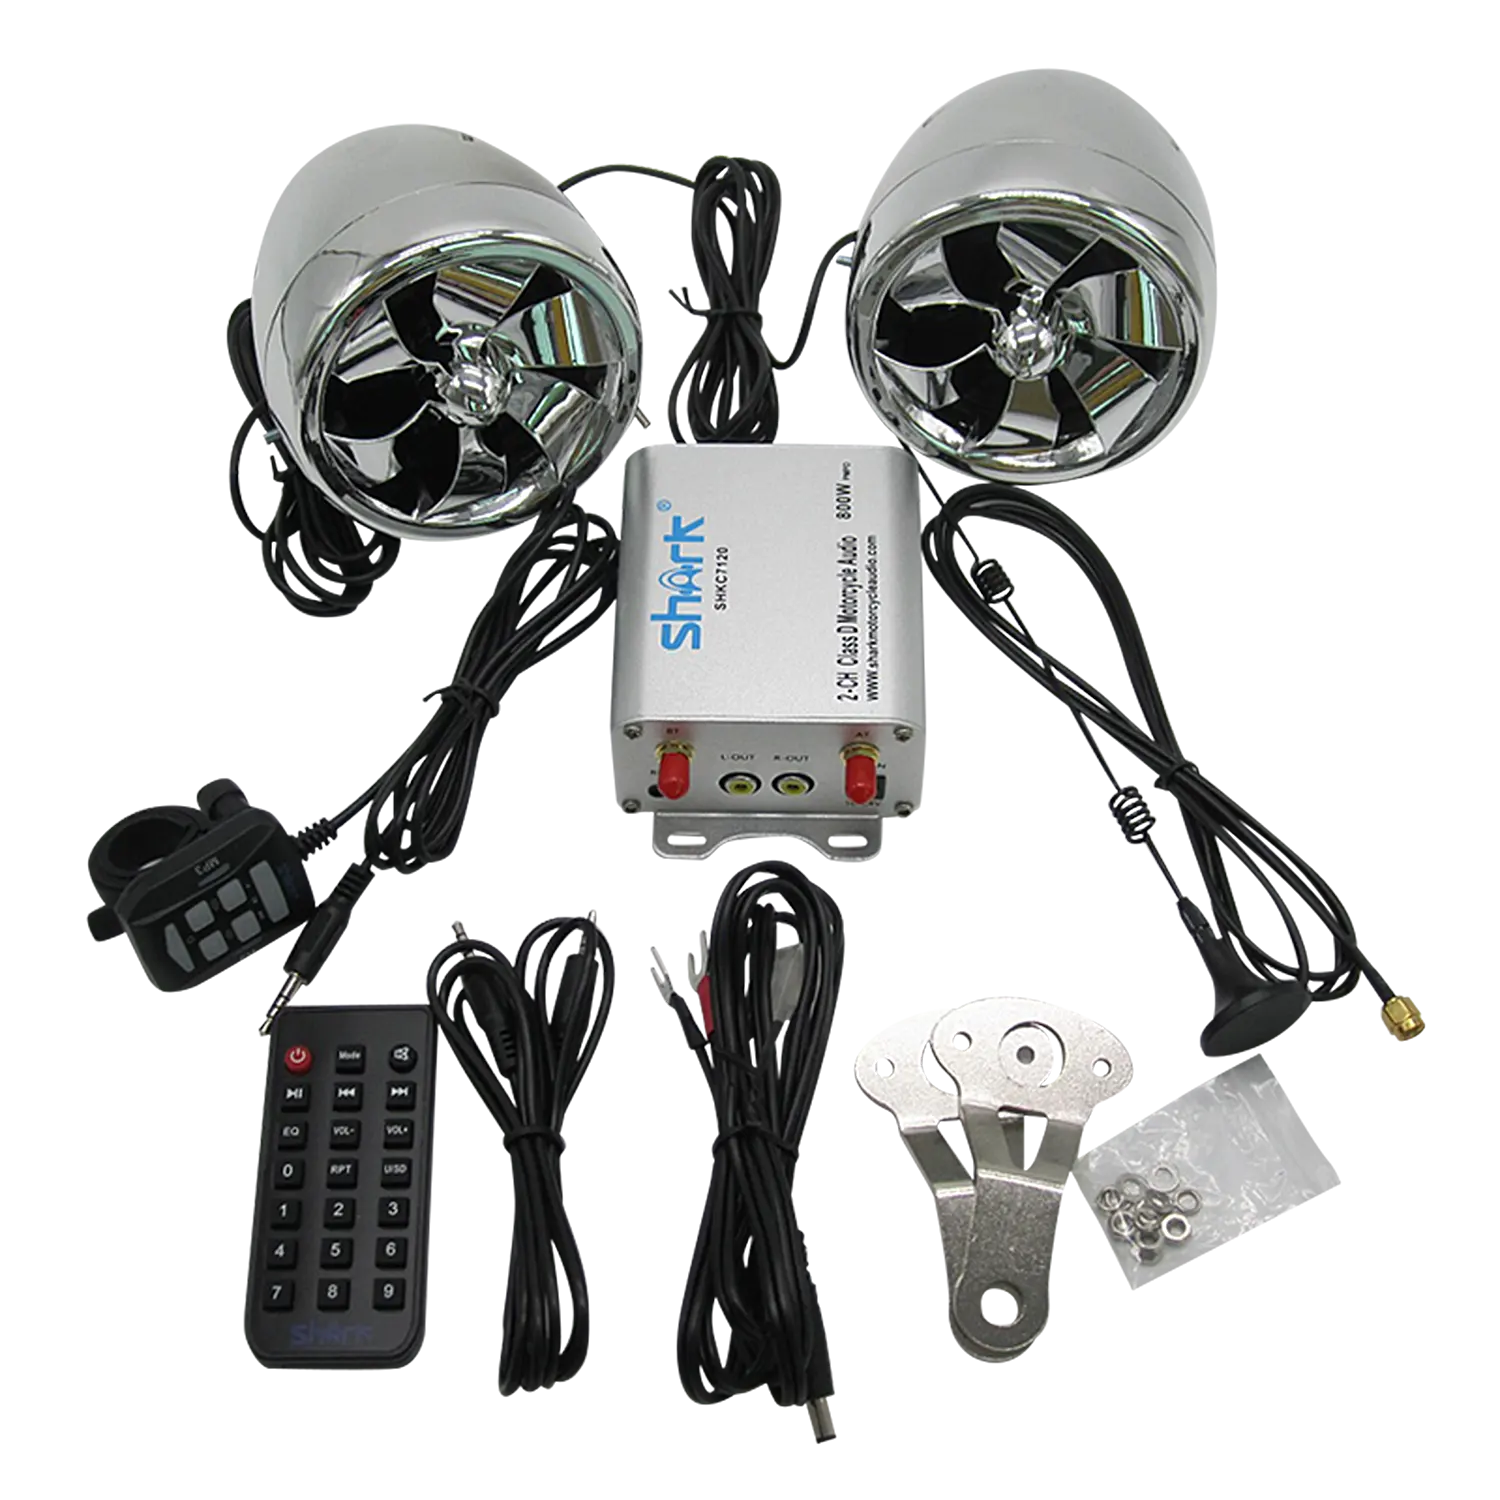 Hi-Fi Mini motosiklet oto Stereo güç araba amplifikatör müzik çalar desteği USB MP3 DVD CD FM SD